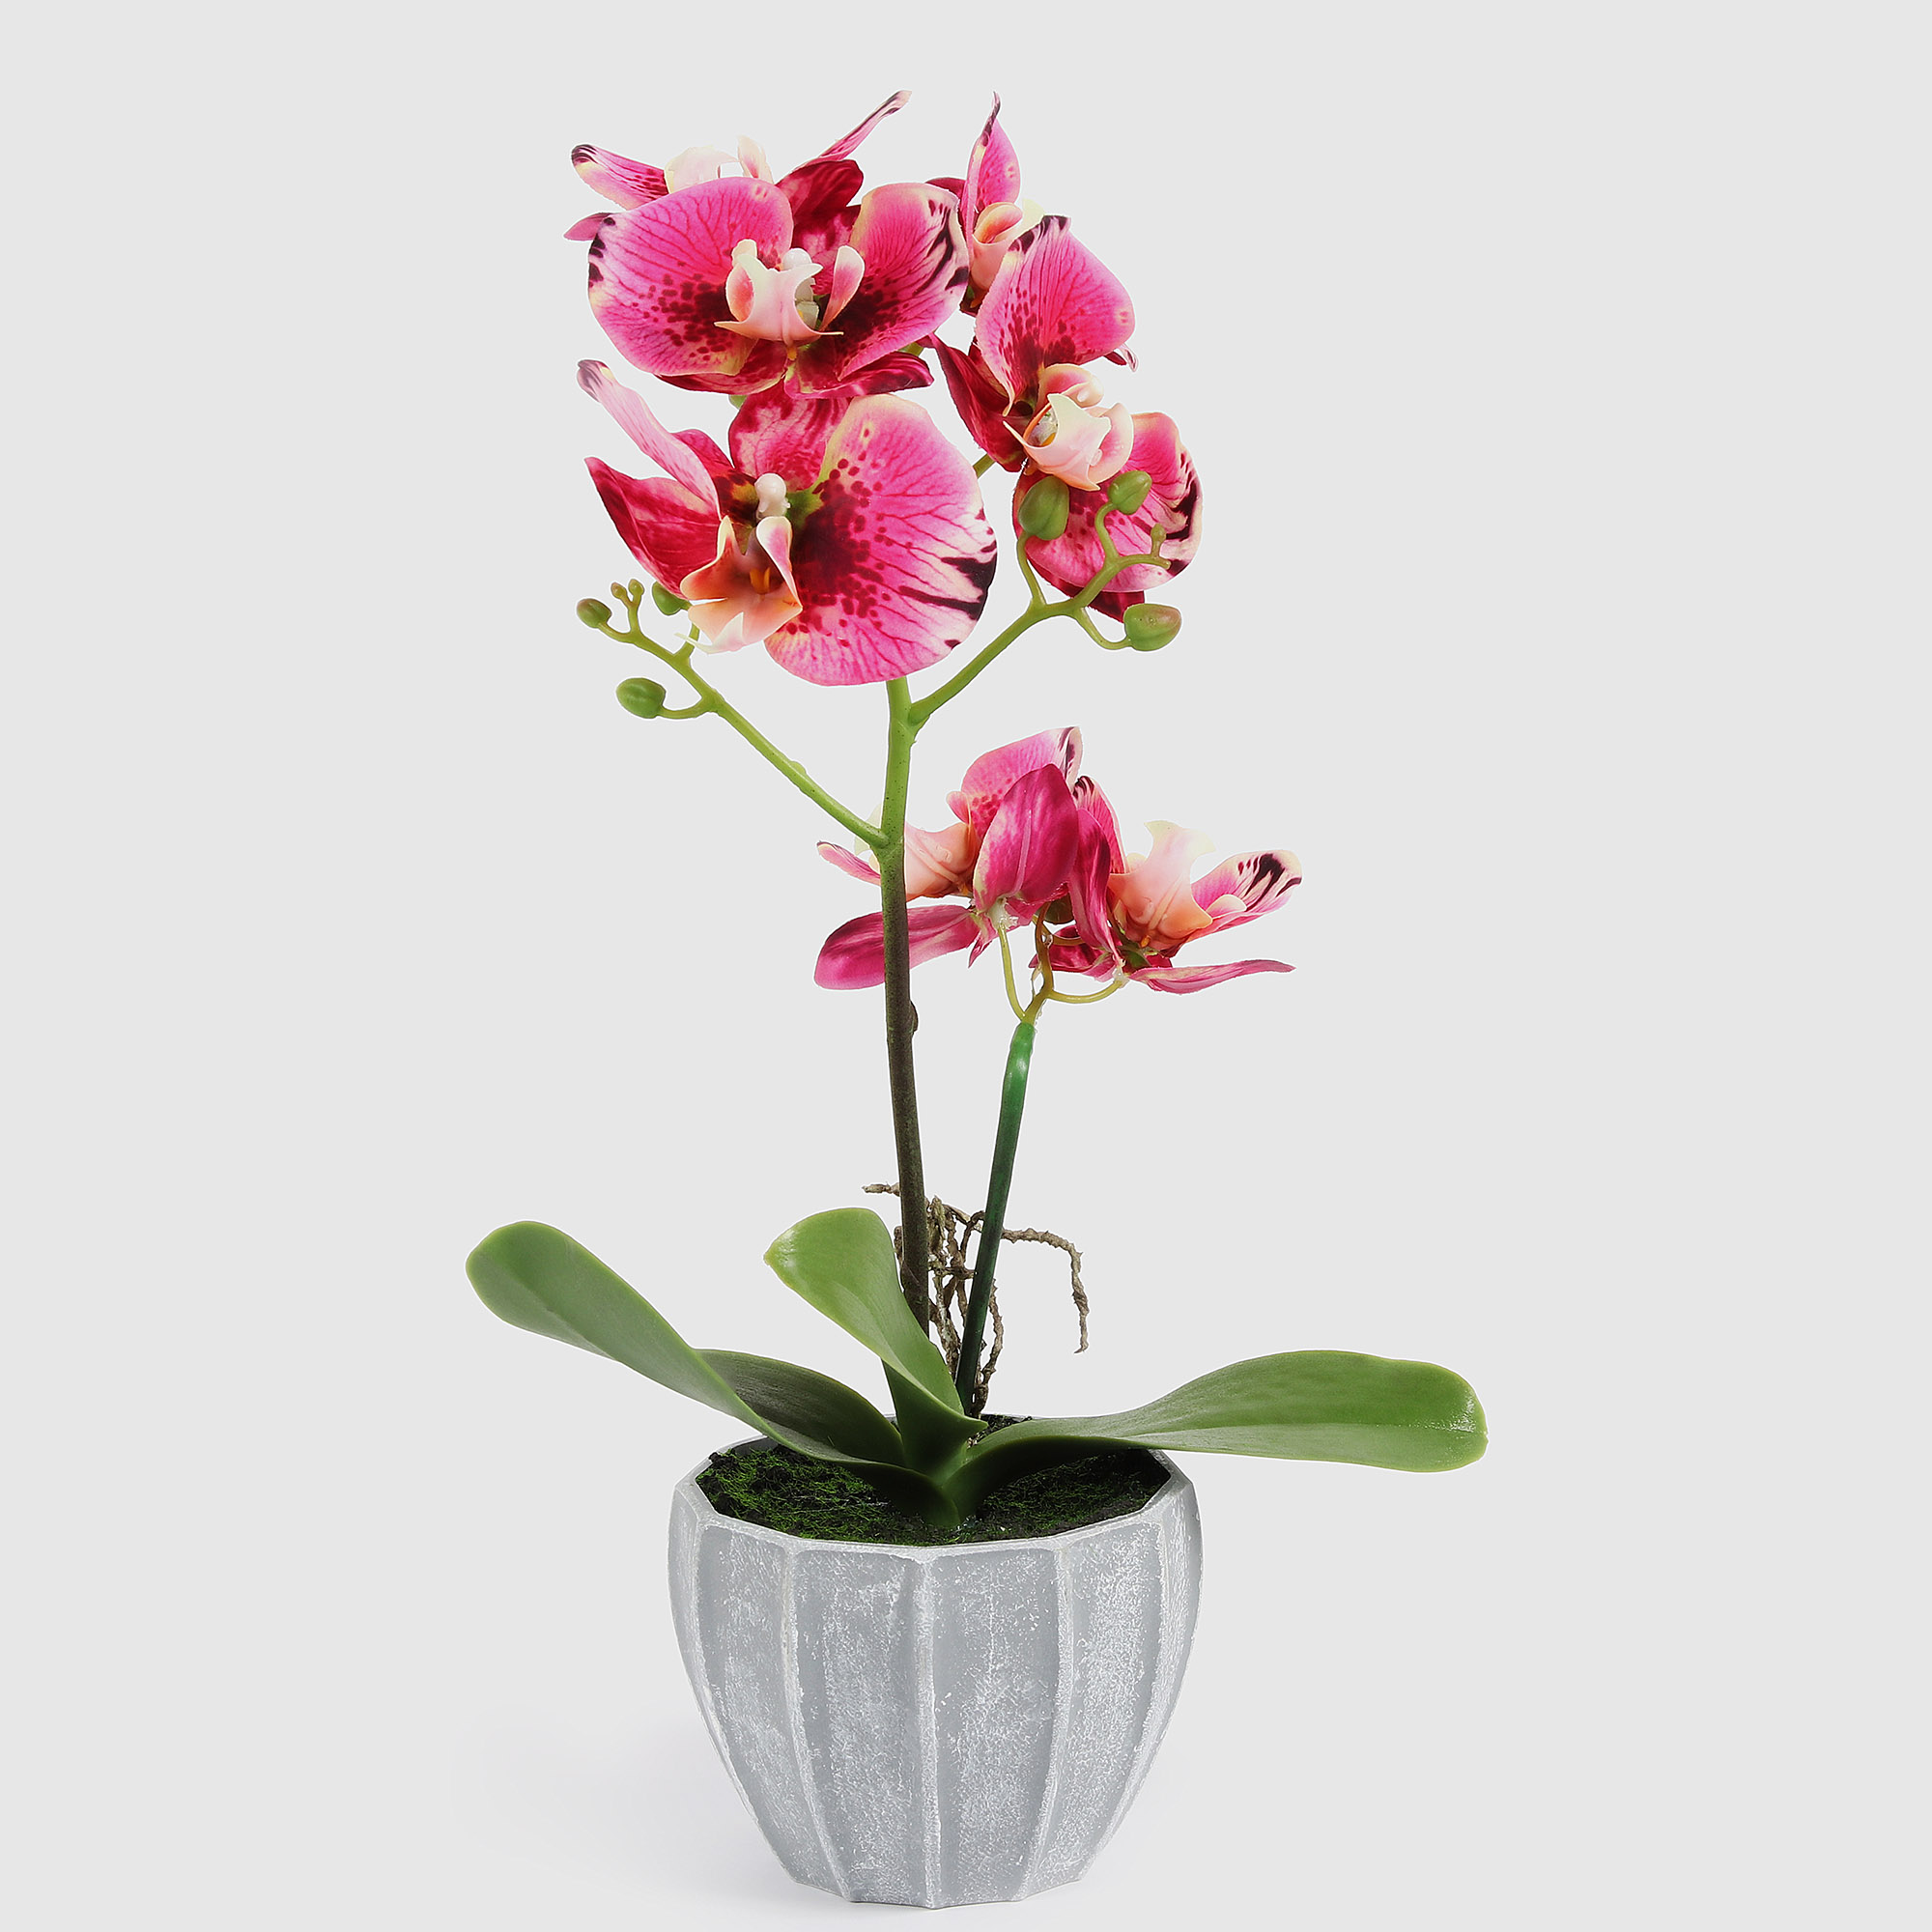 Цветок искусственный Fuzhou Light в горшке орхидея тигровая 2 цвета, 40 см цветок искусственный fuzhou light орхидея бело розовая в горшке 54 см